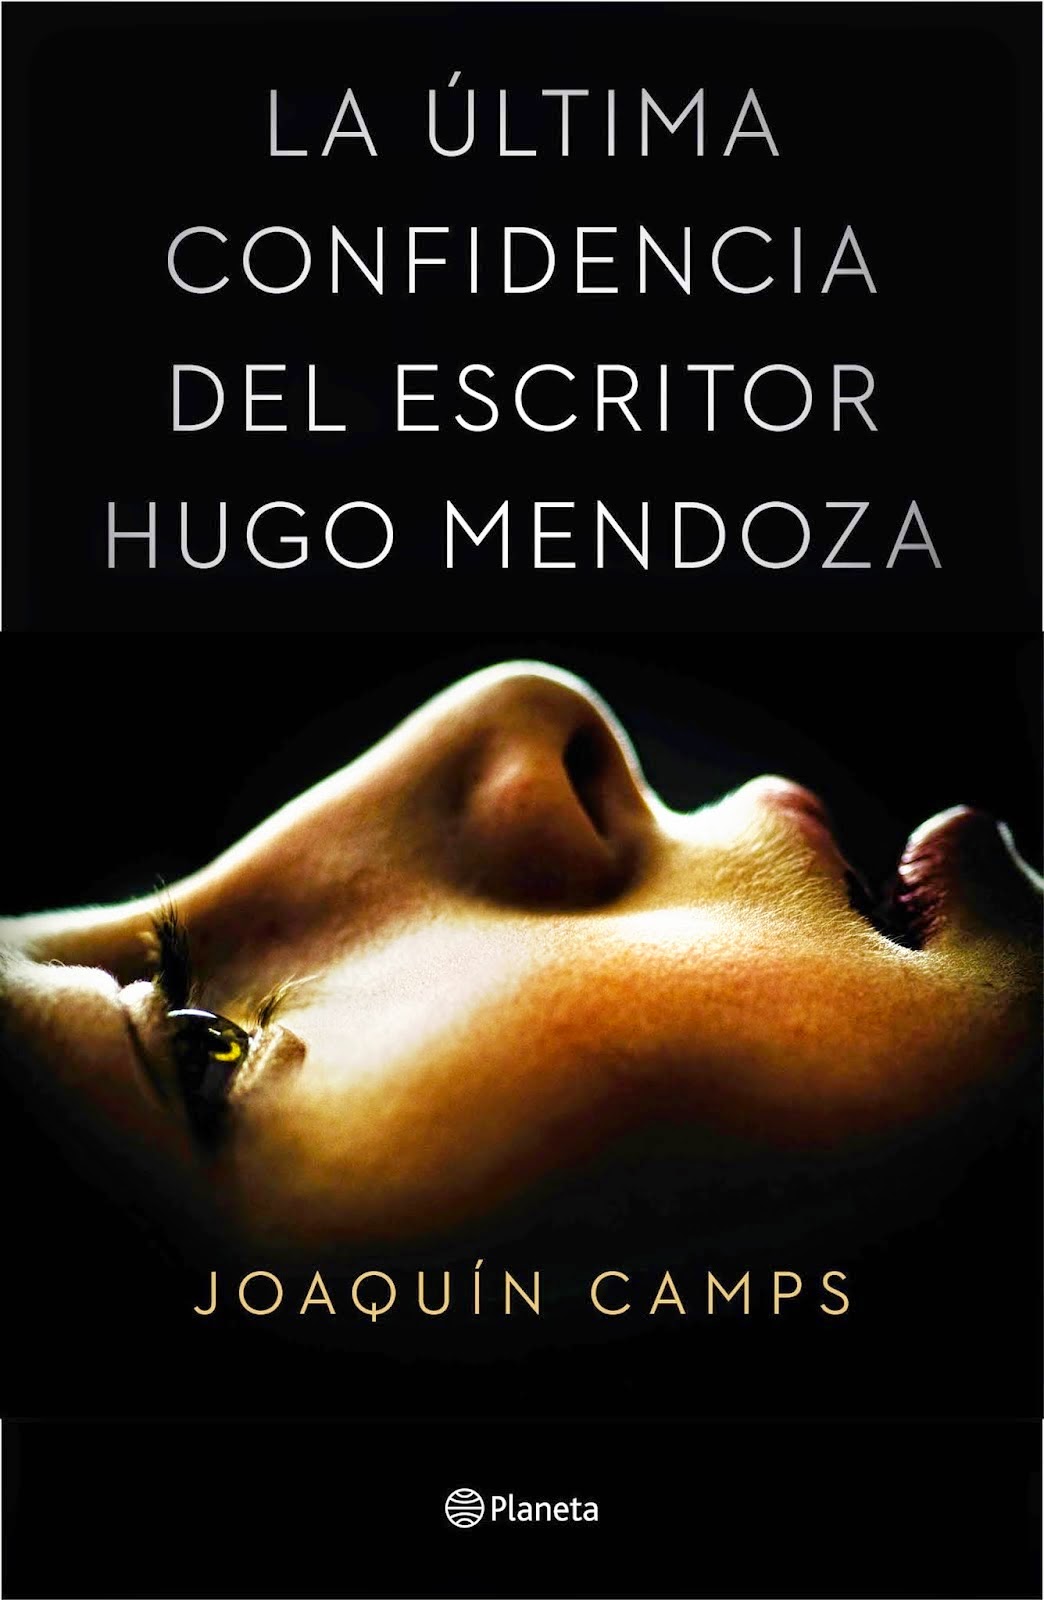 La última confidencia del escritor Hugo Mendoza - Joaquín Camps (2015)